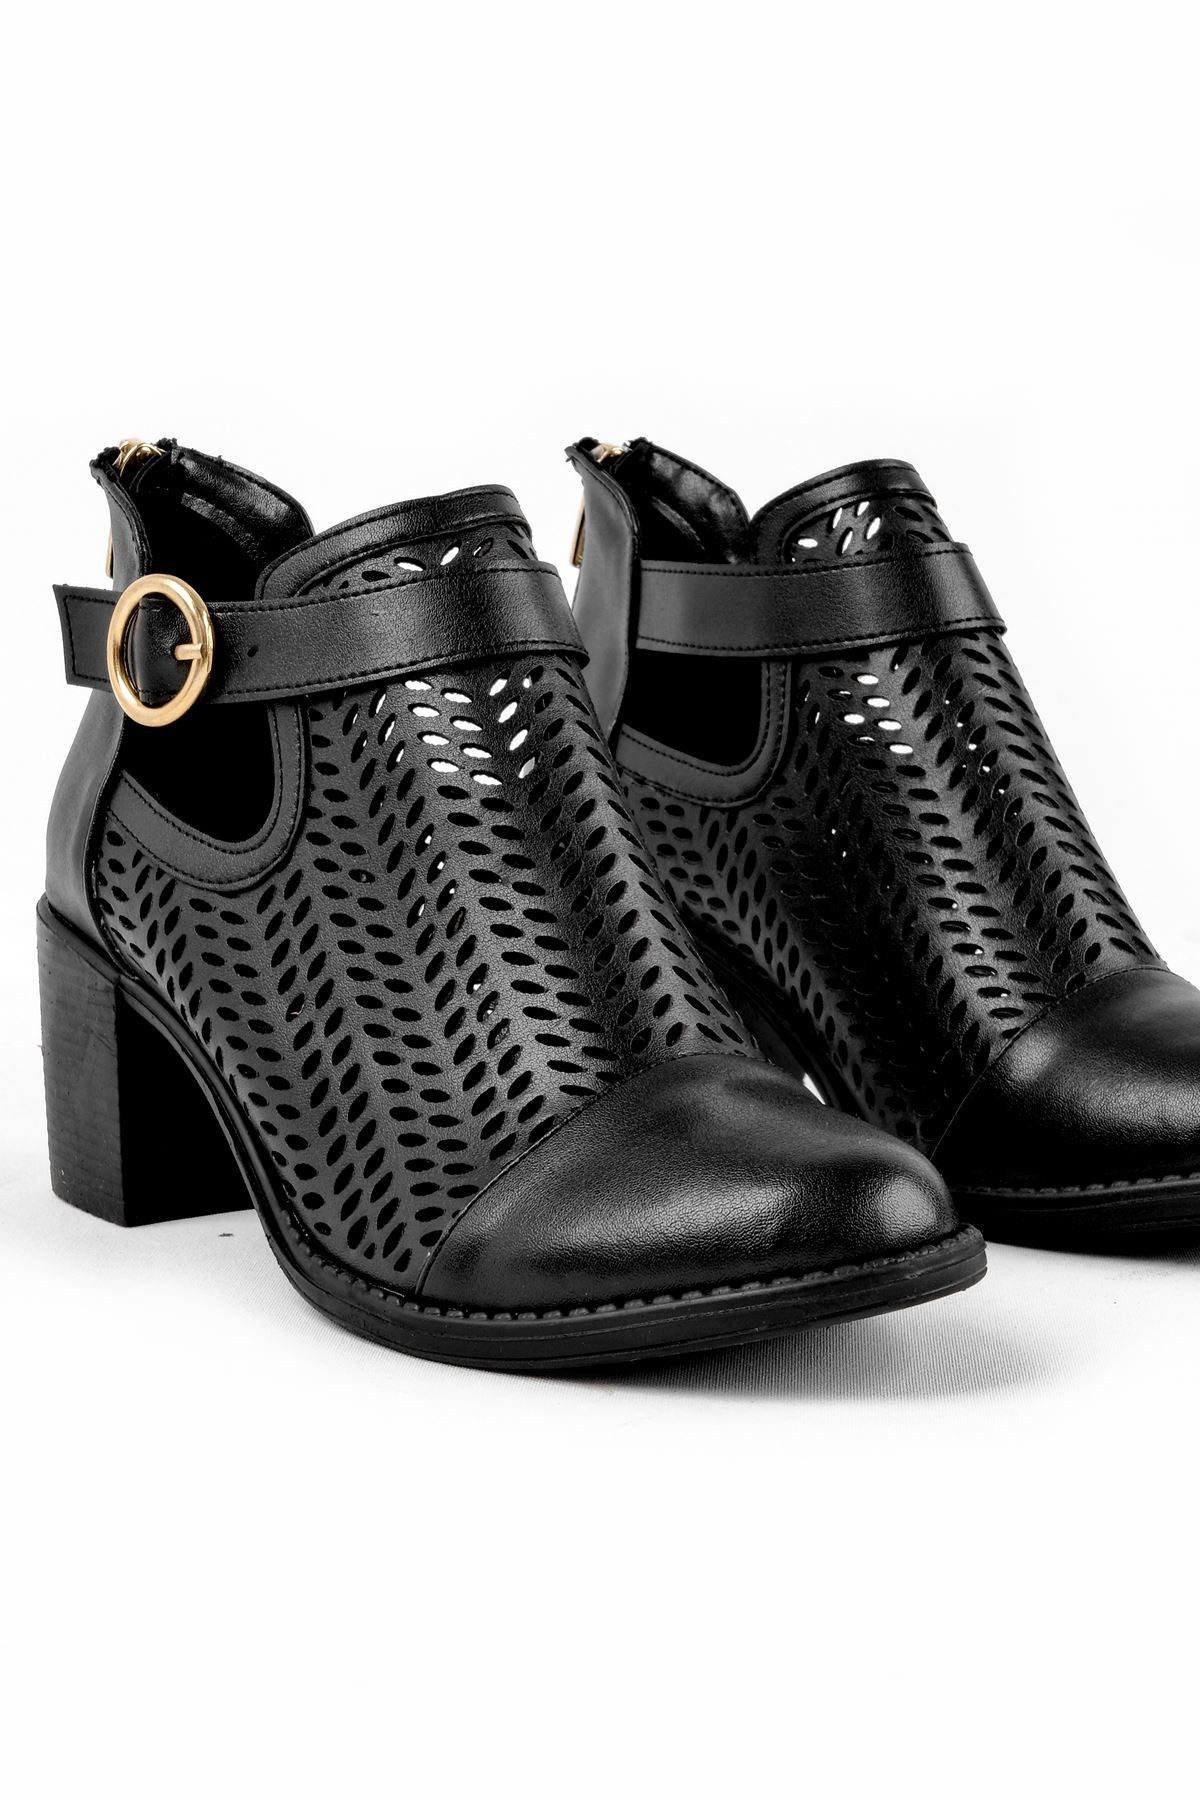 Adele Kadın Yazlık Delikli Bot Topuklu Ayakkabı (B2236) - Siyah